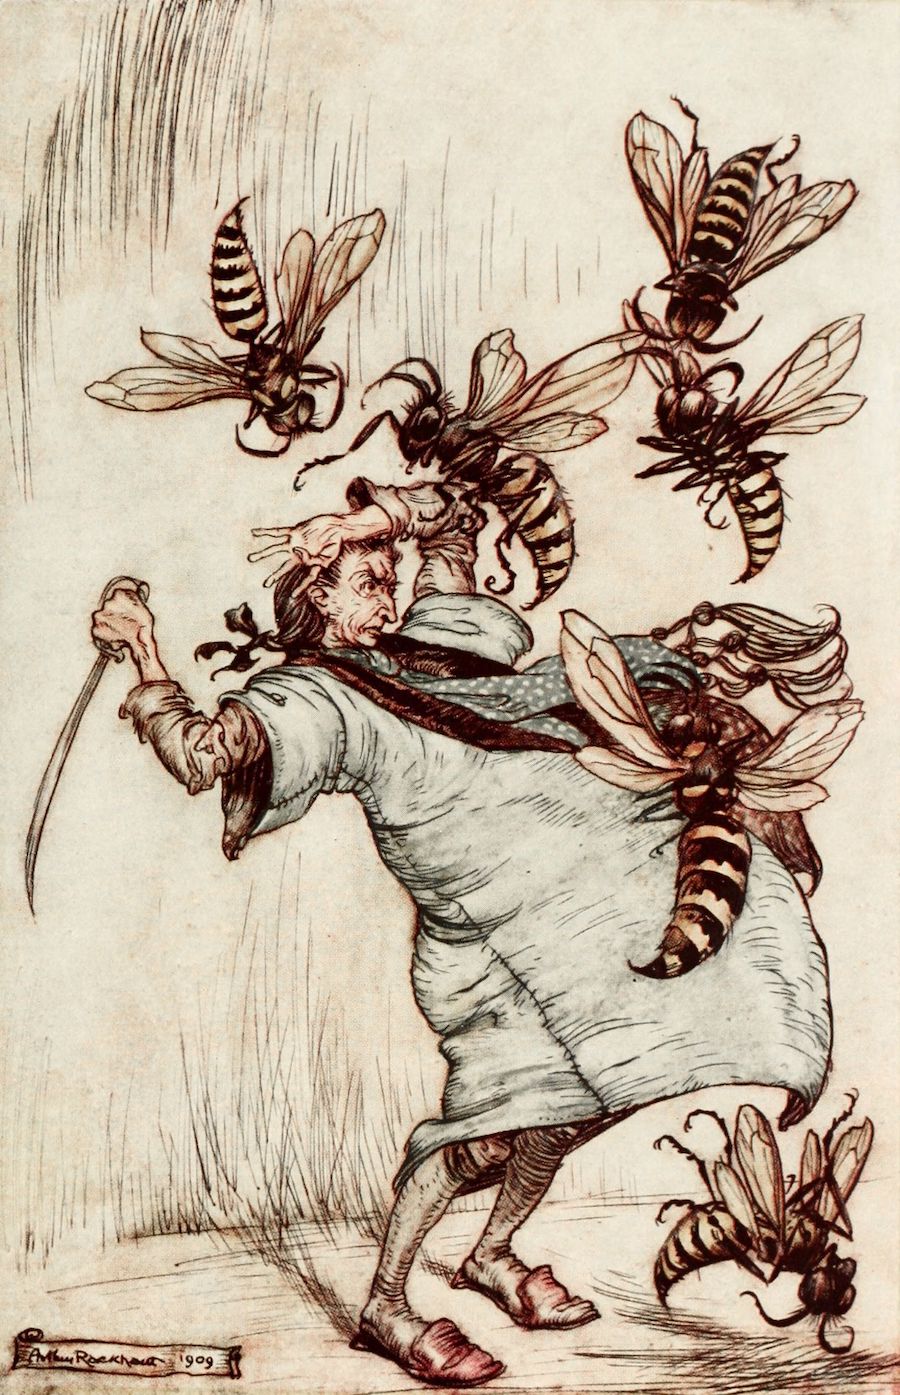 格列佛挥剑攻击大黄蜂